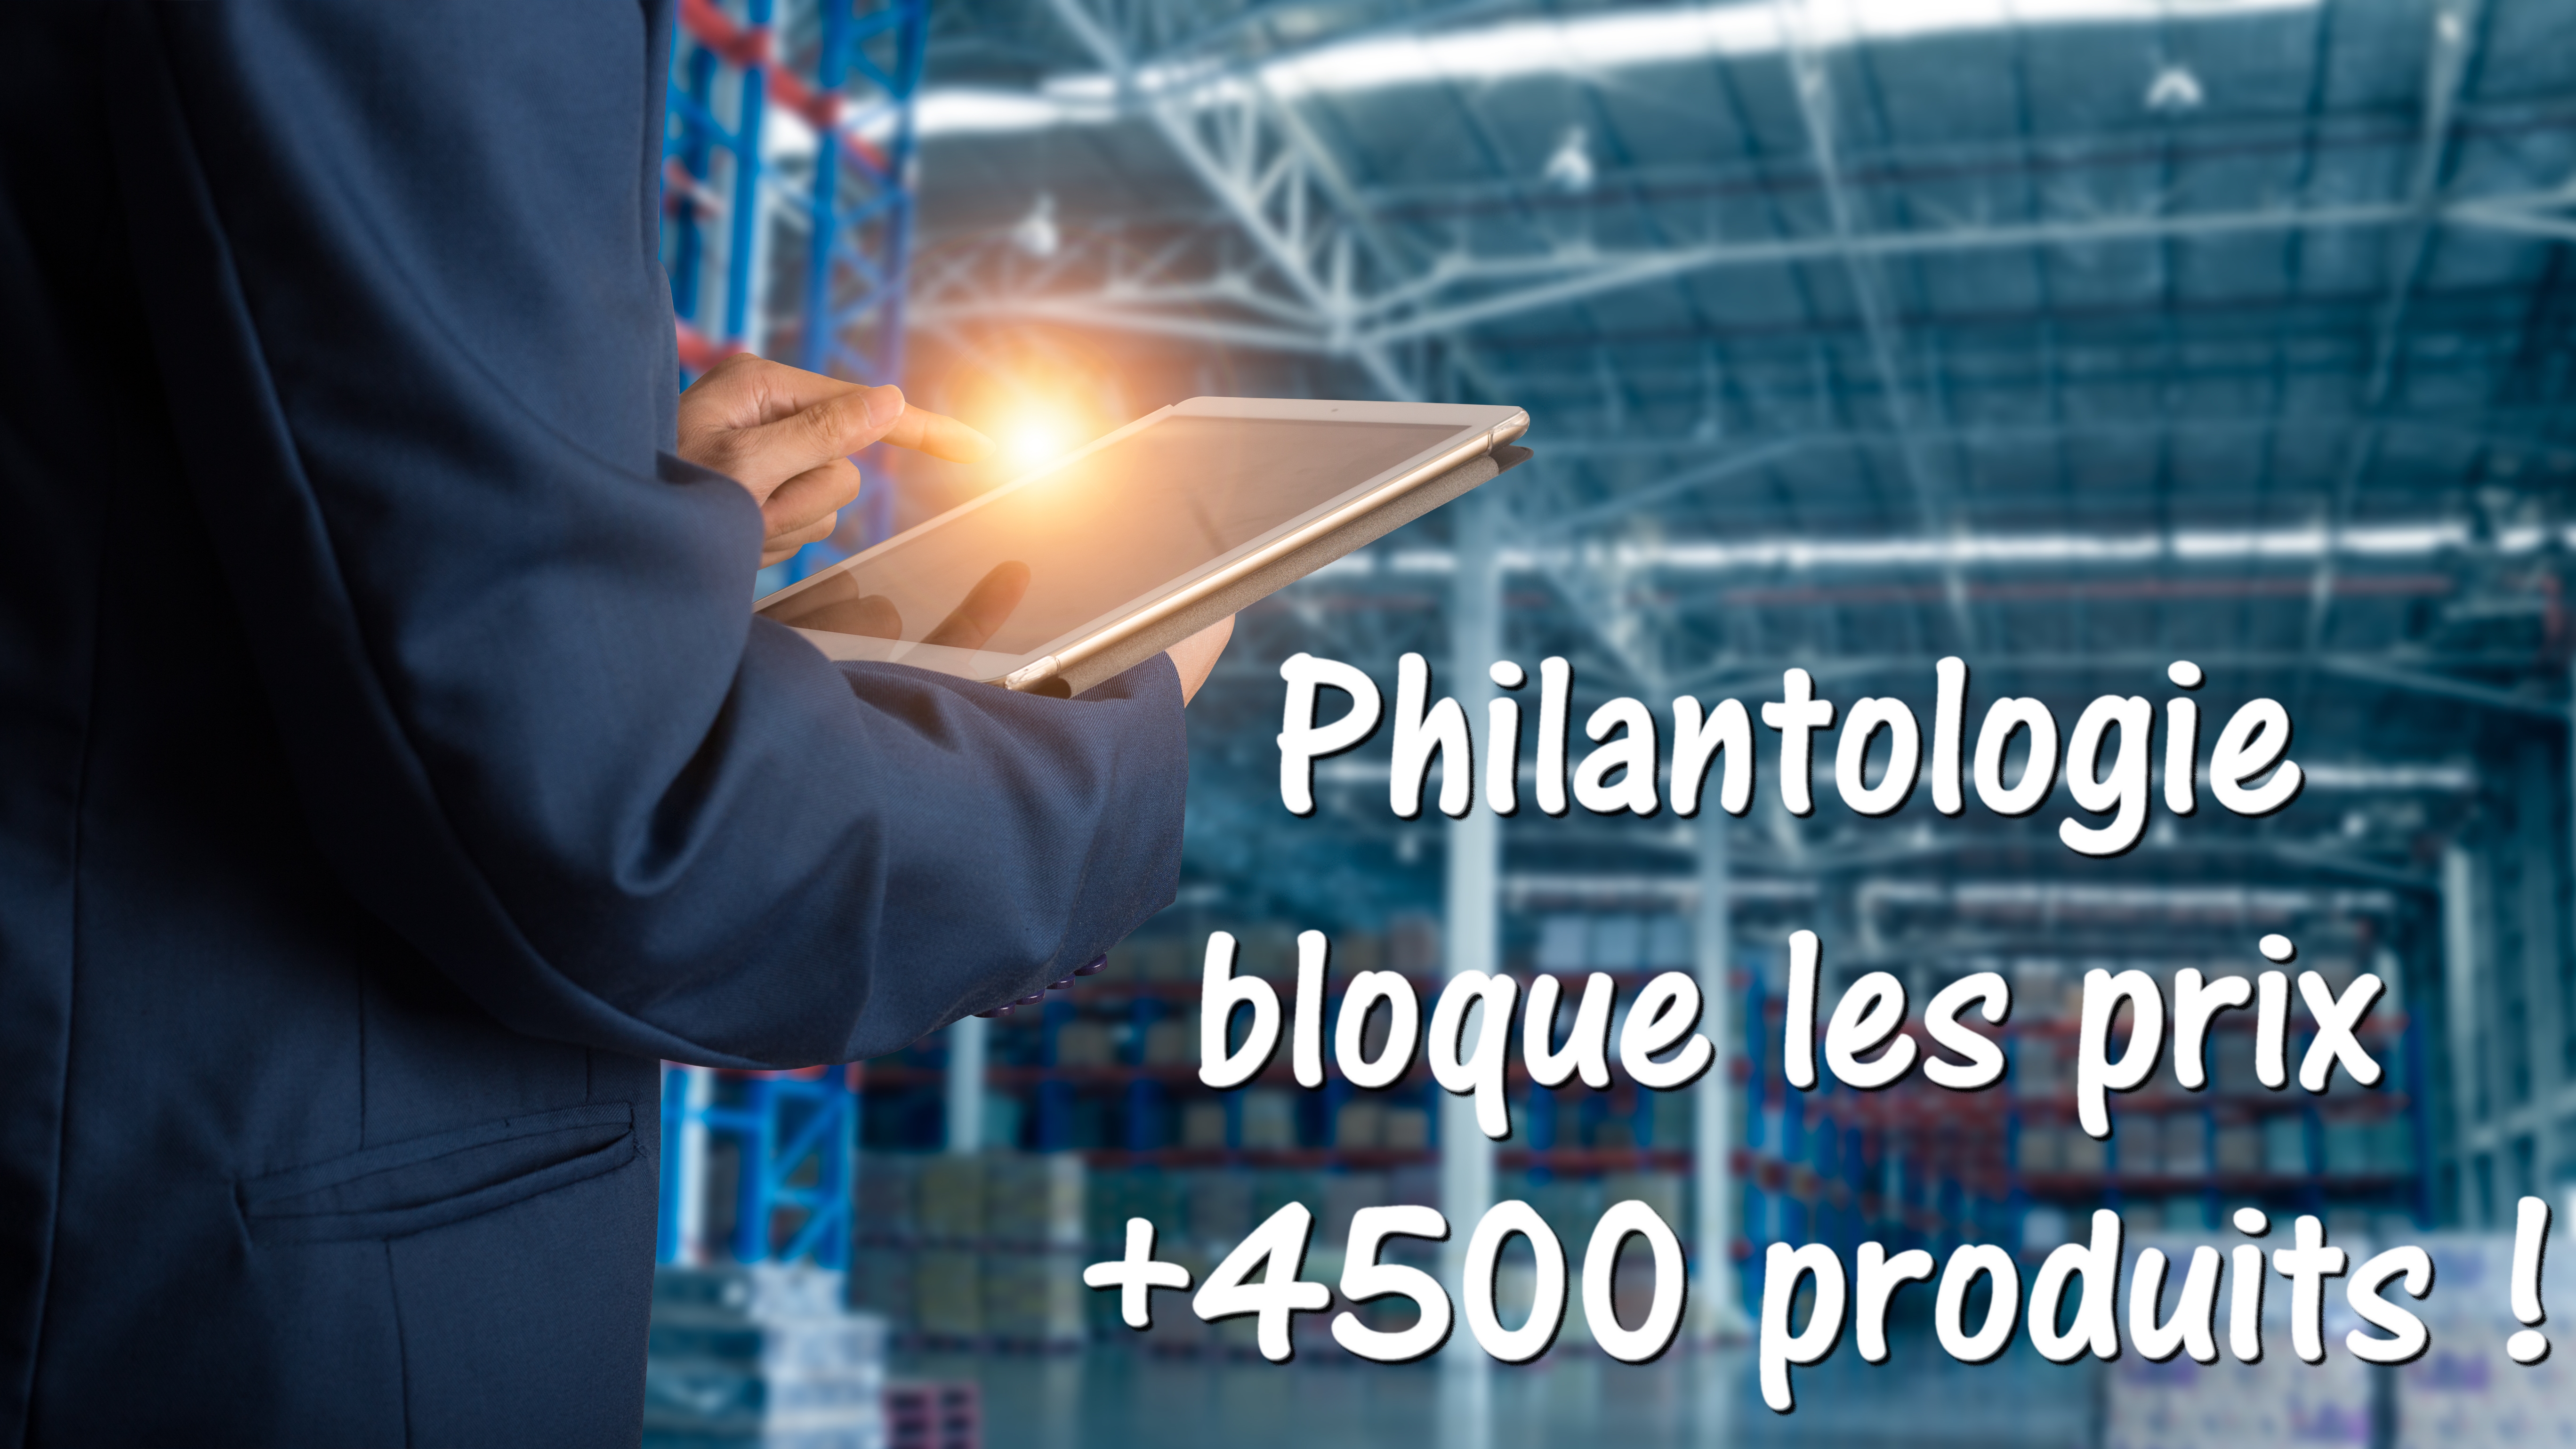 Philantologie bloque le prix de 4500 produits.